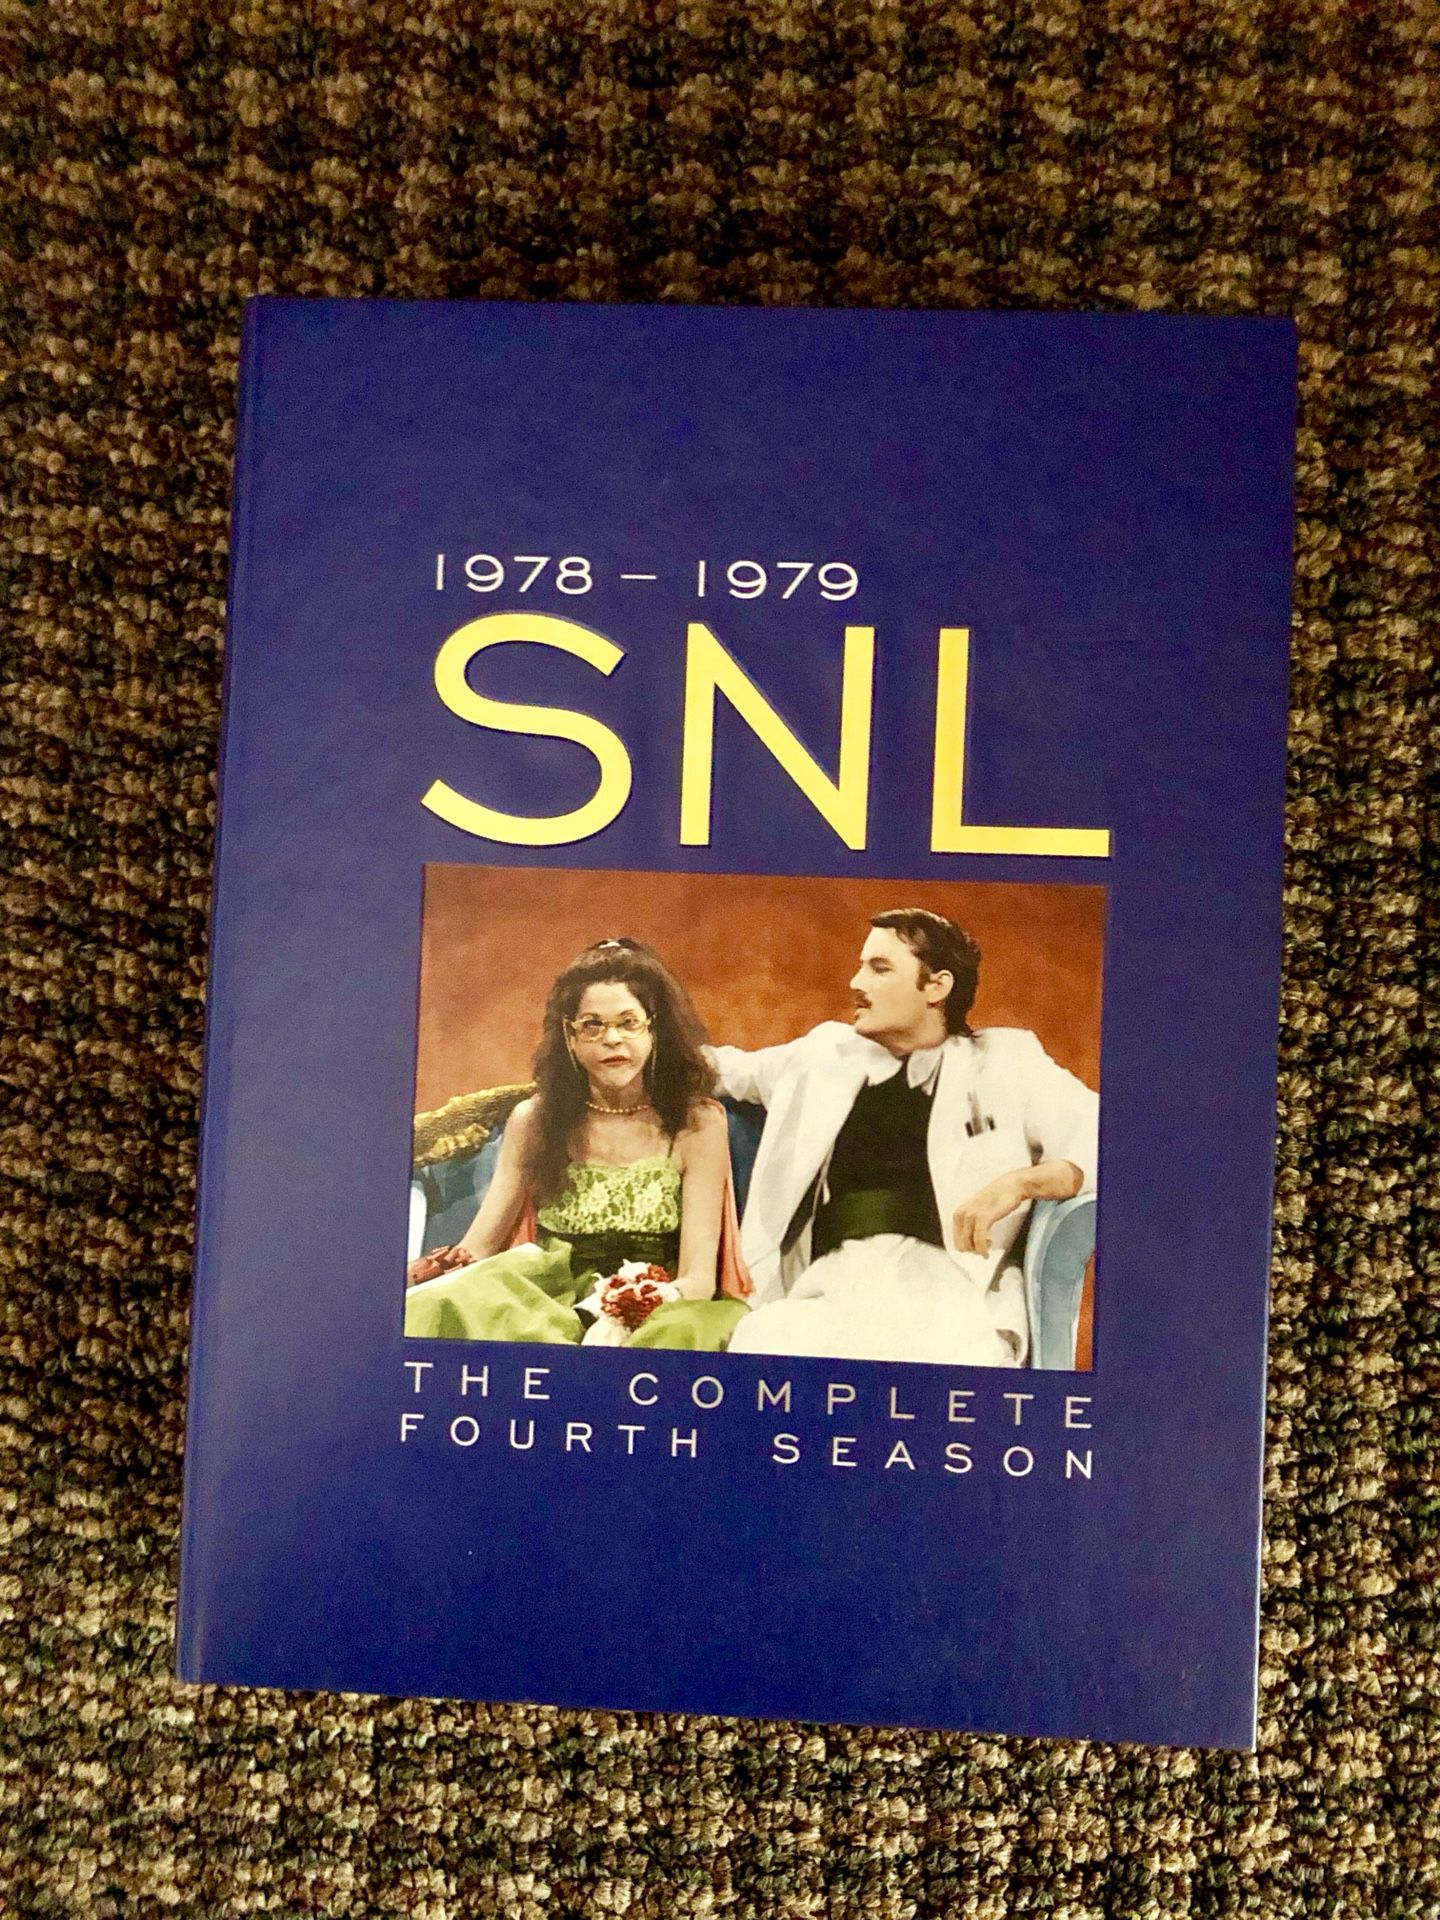 SNL DVD set - the Fourth Season 1978-1979